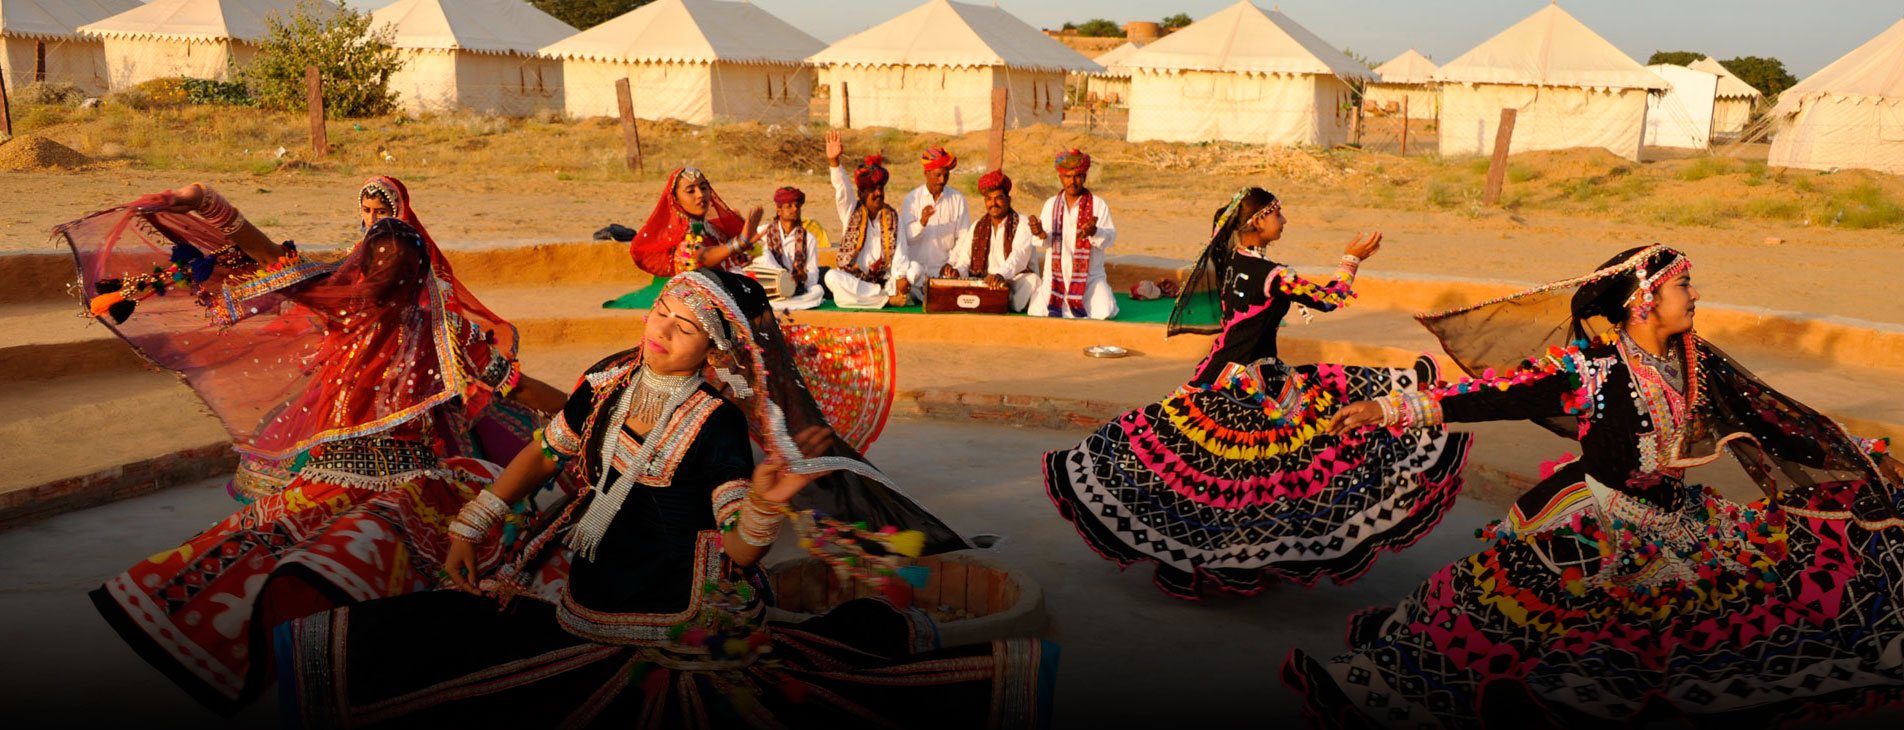 Kalbelia Dance of Rajasthan